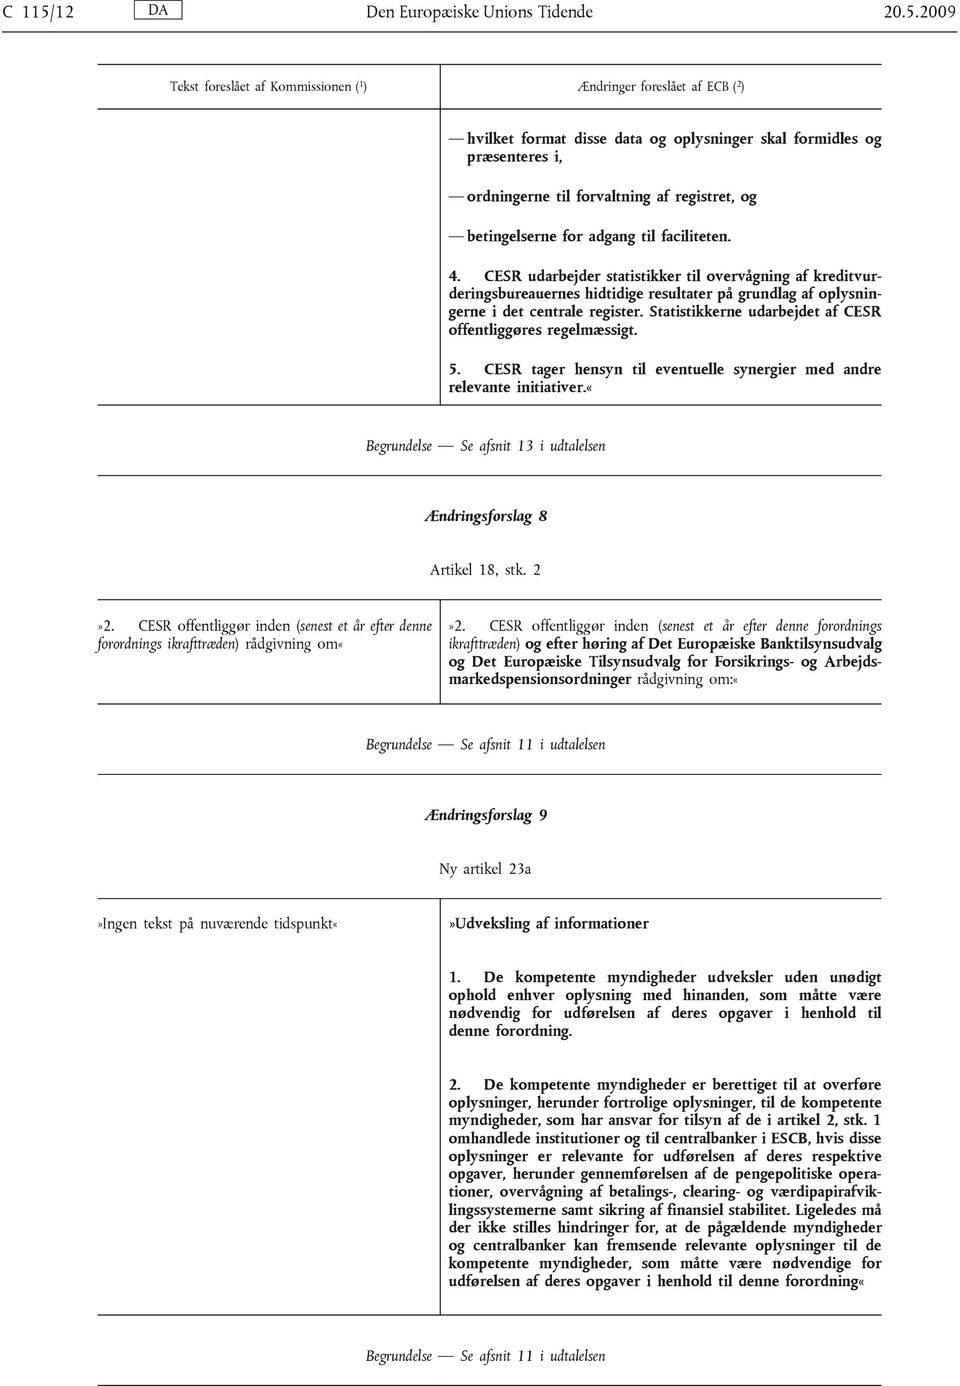 2009 Tekst foreslået af Kommissionen ( 1 ) Ændringer foreslået af ECB ( 2 ) hvilket format disse data og oplysninger skal formidles og præsenteres i, ordningerne til forvaltning af registret, og